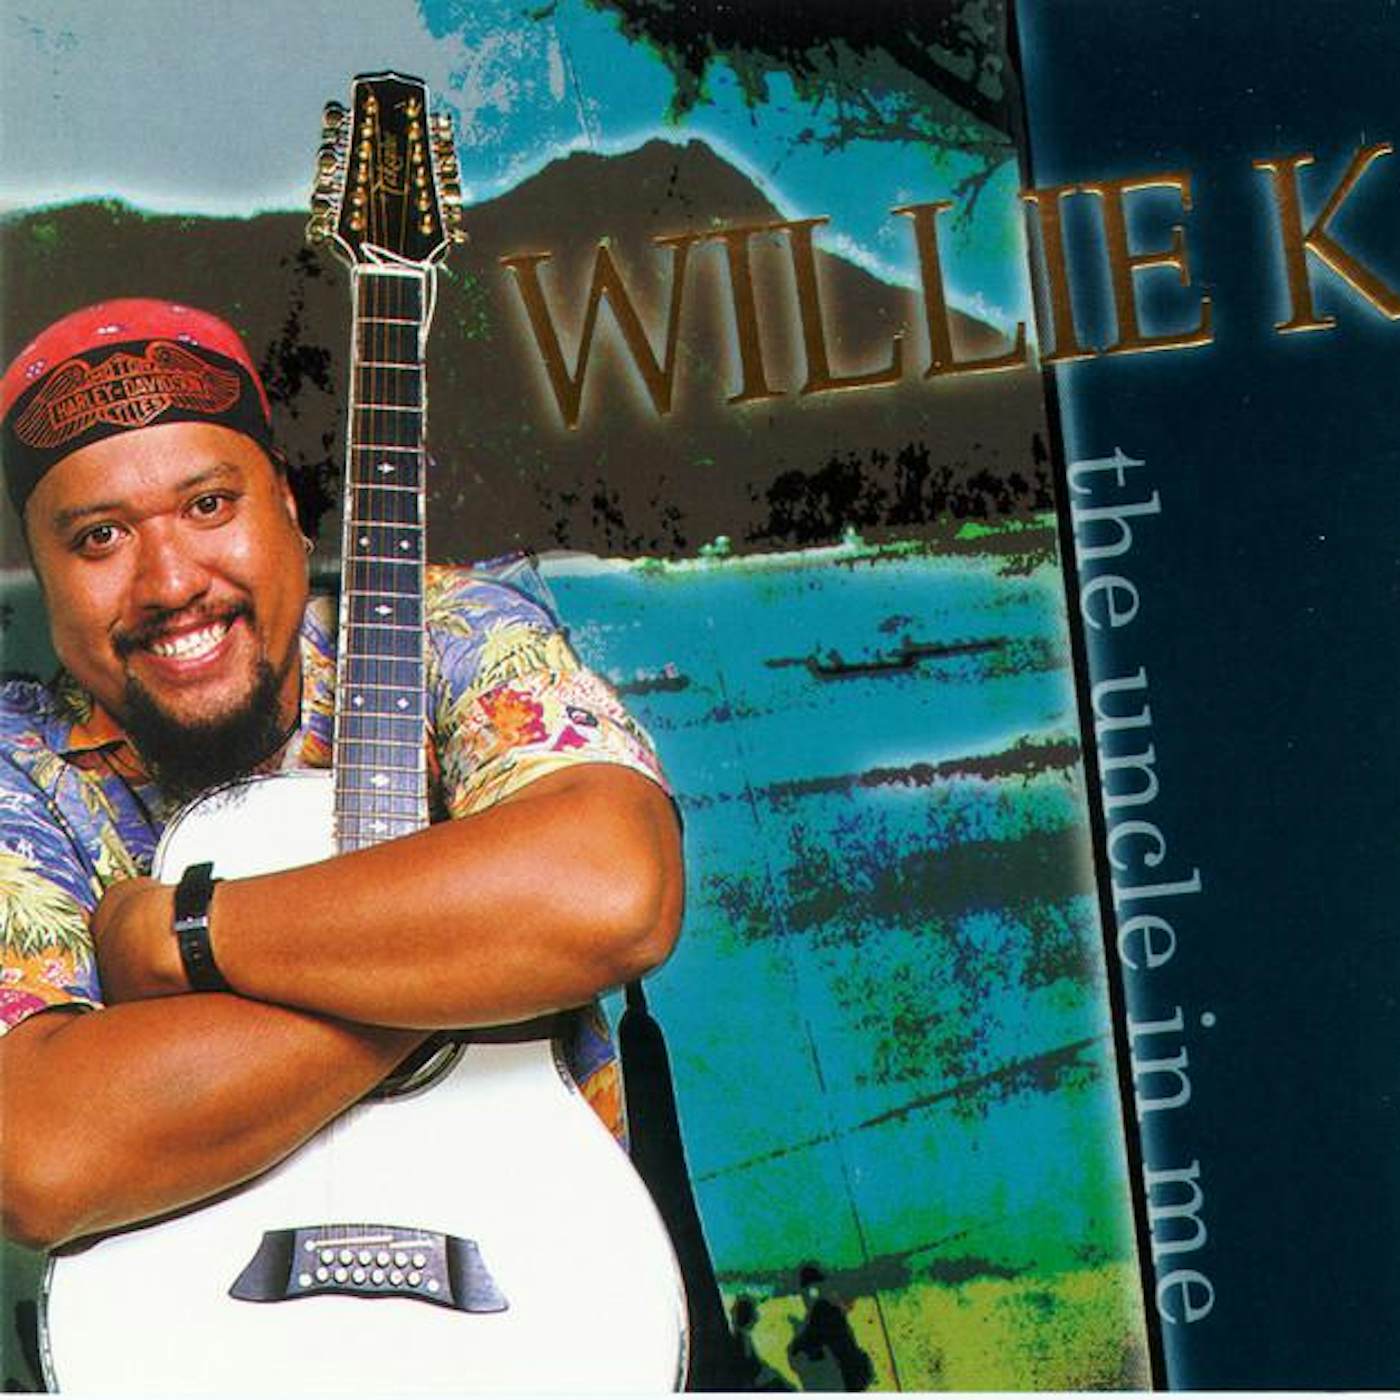 Willie K